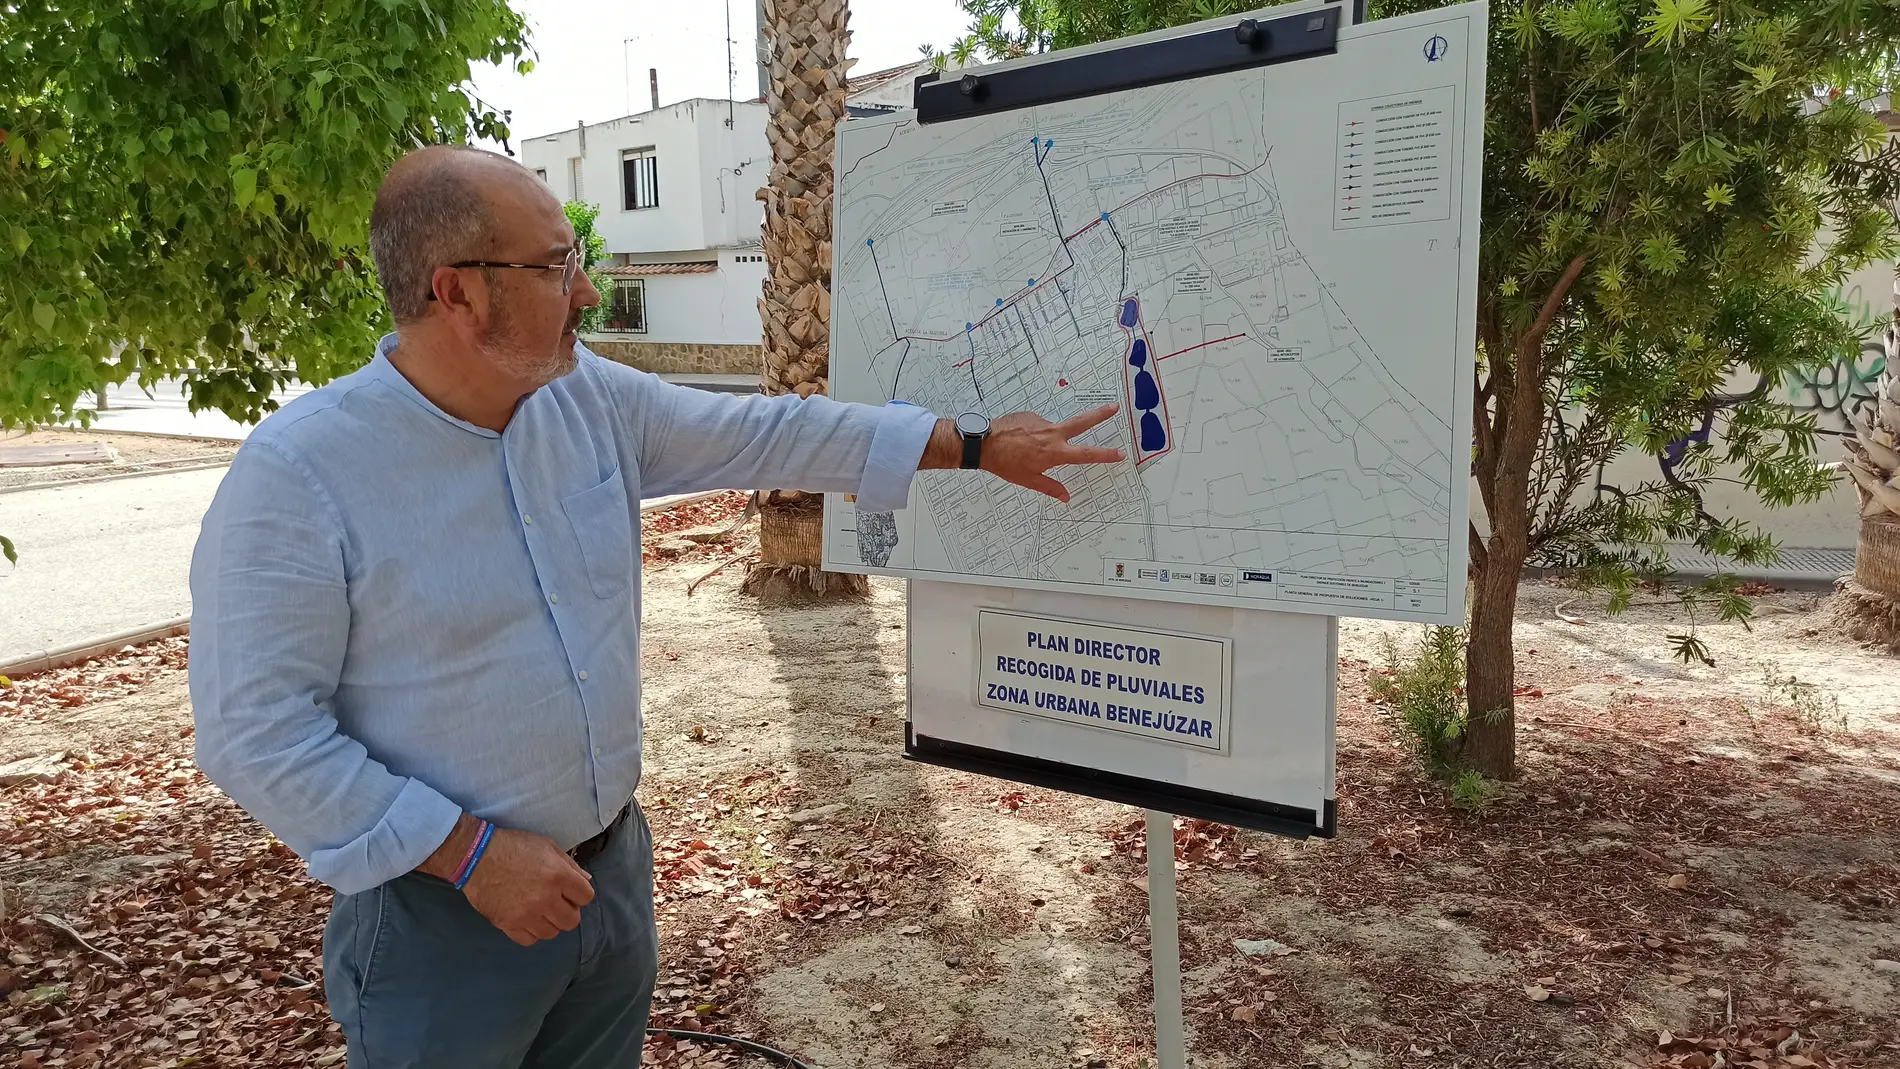 El plan director de recogida de pluviales de Benejúzar contempla un jardín con cuatro estanques de agua        